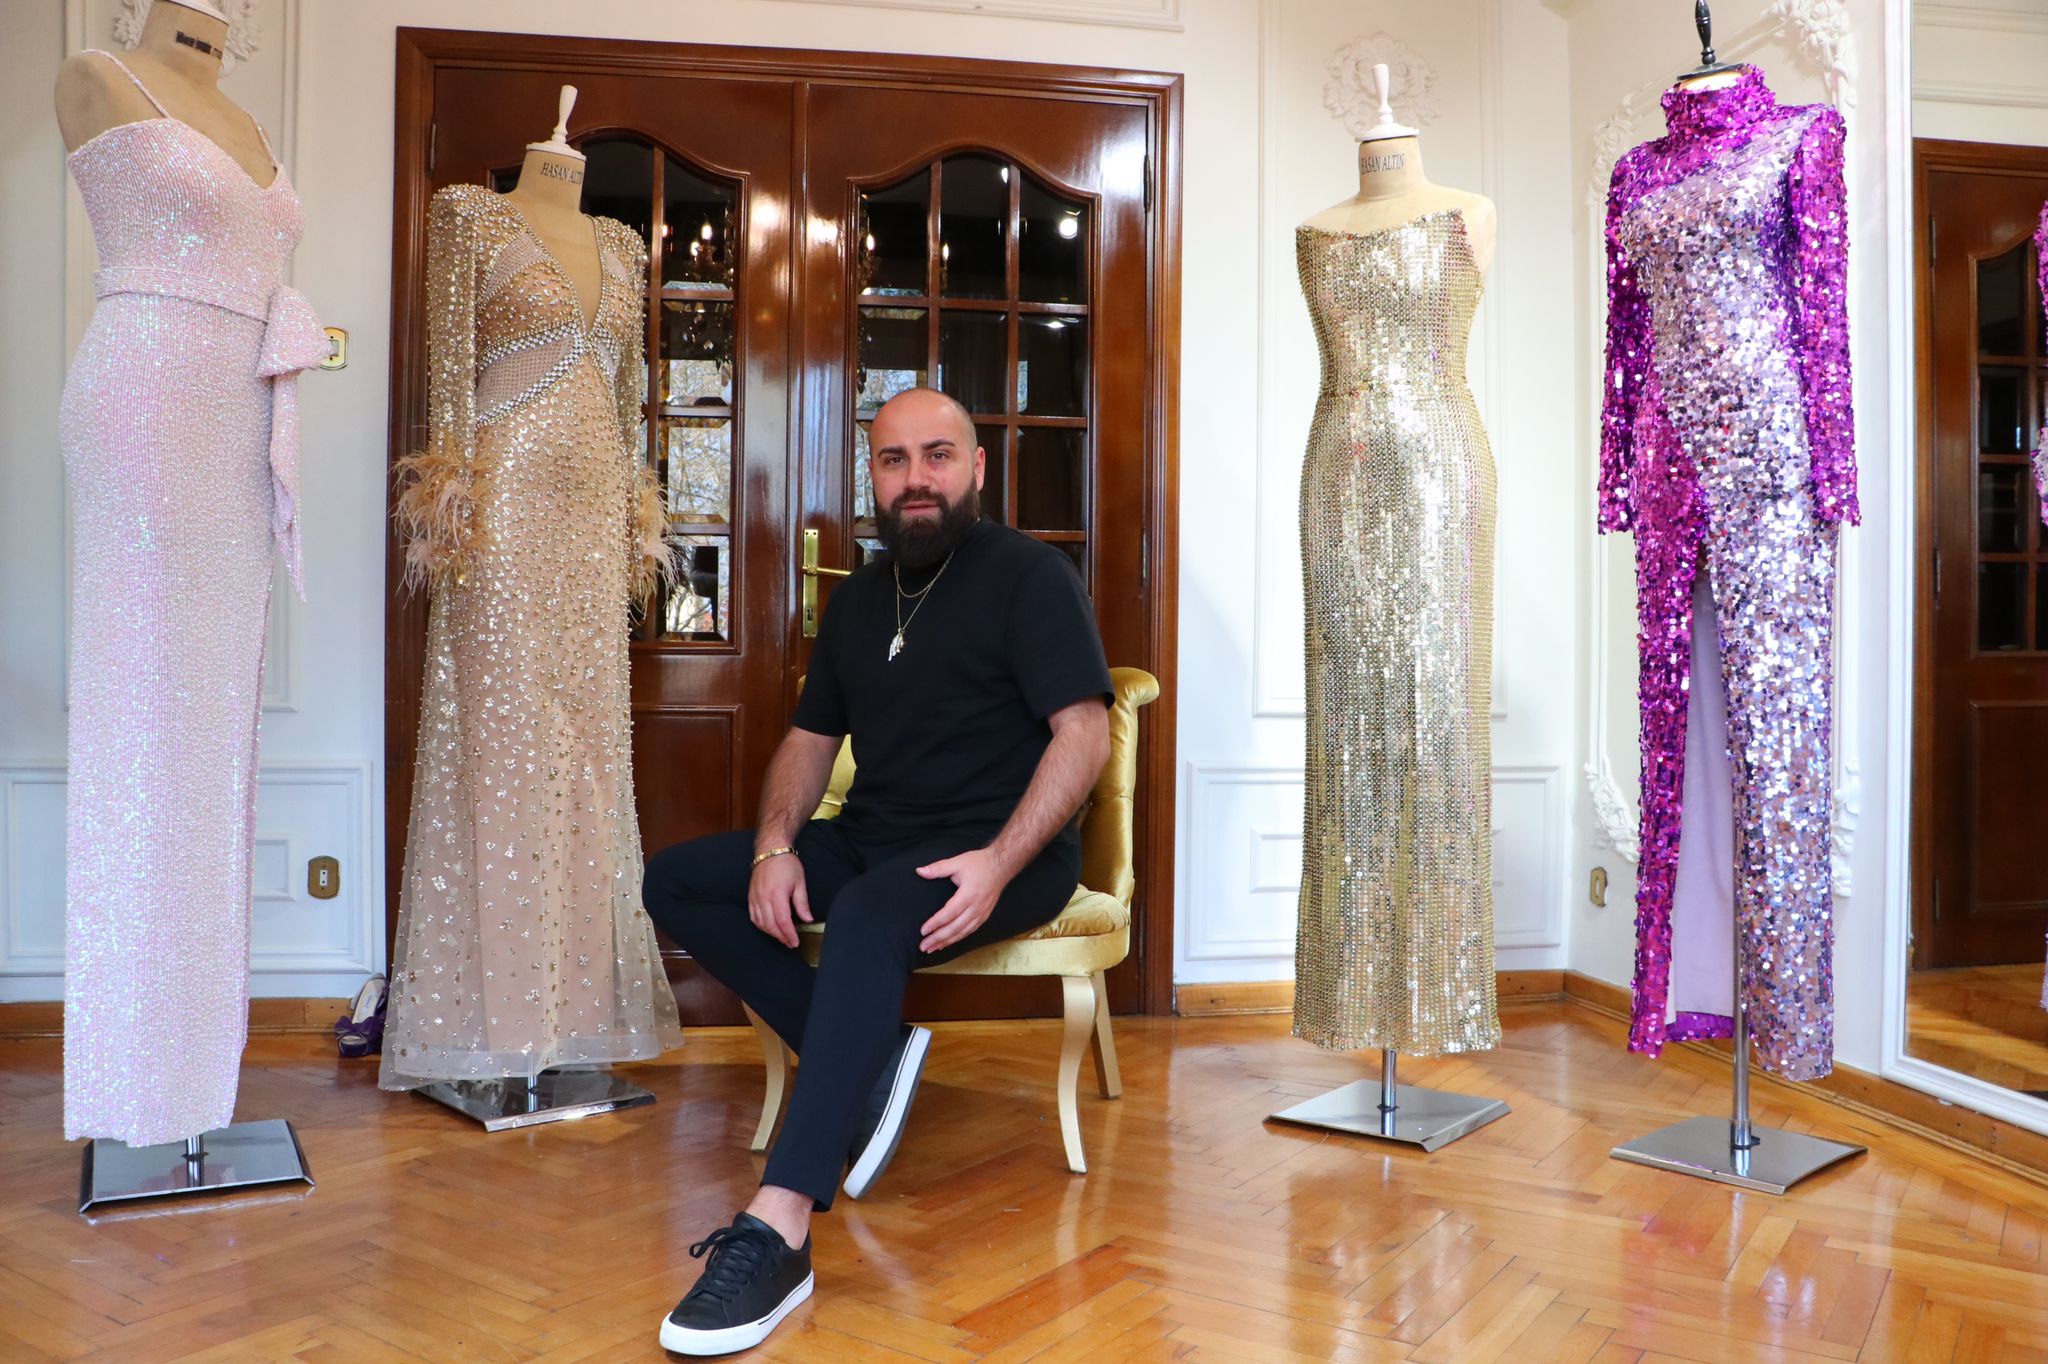 Modacı Hasan Altın, Ebru Yaşar için tasarladığı sahne kostümü ile gündeme geldi